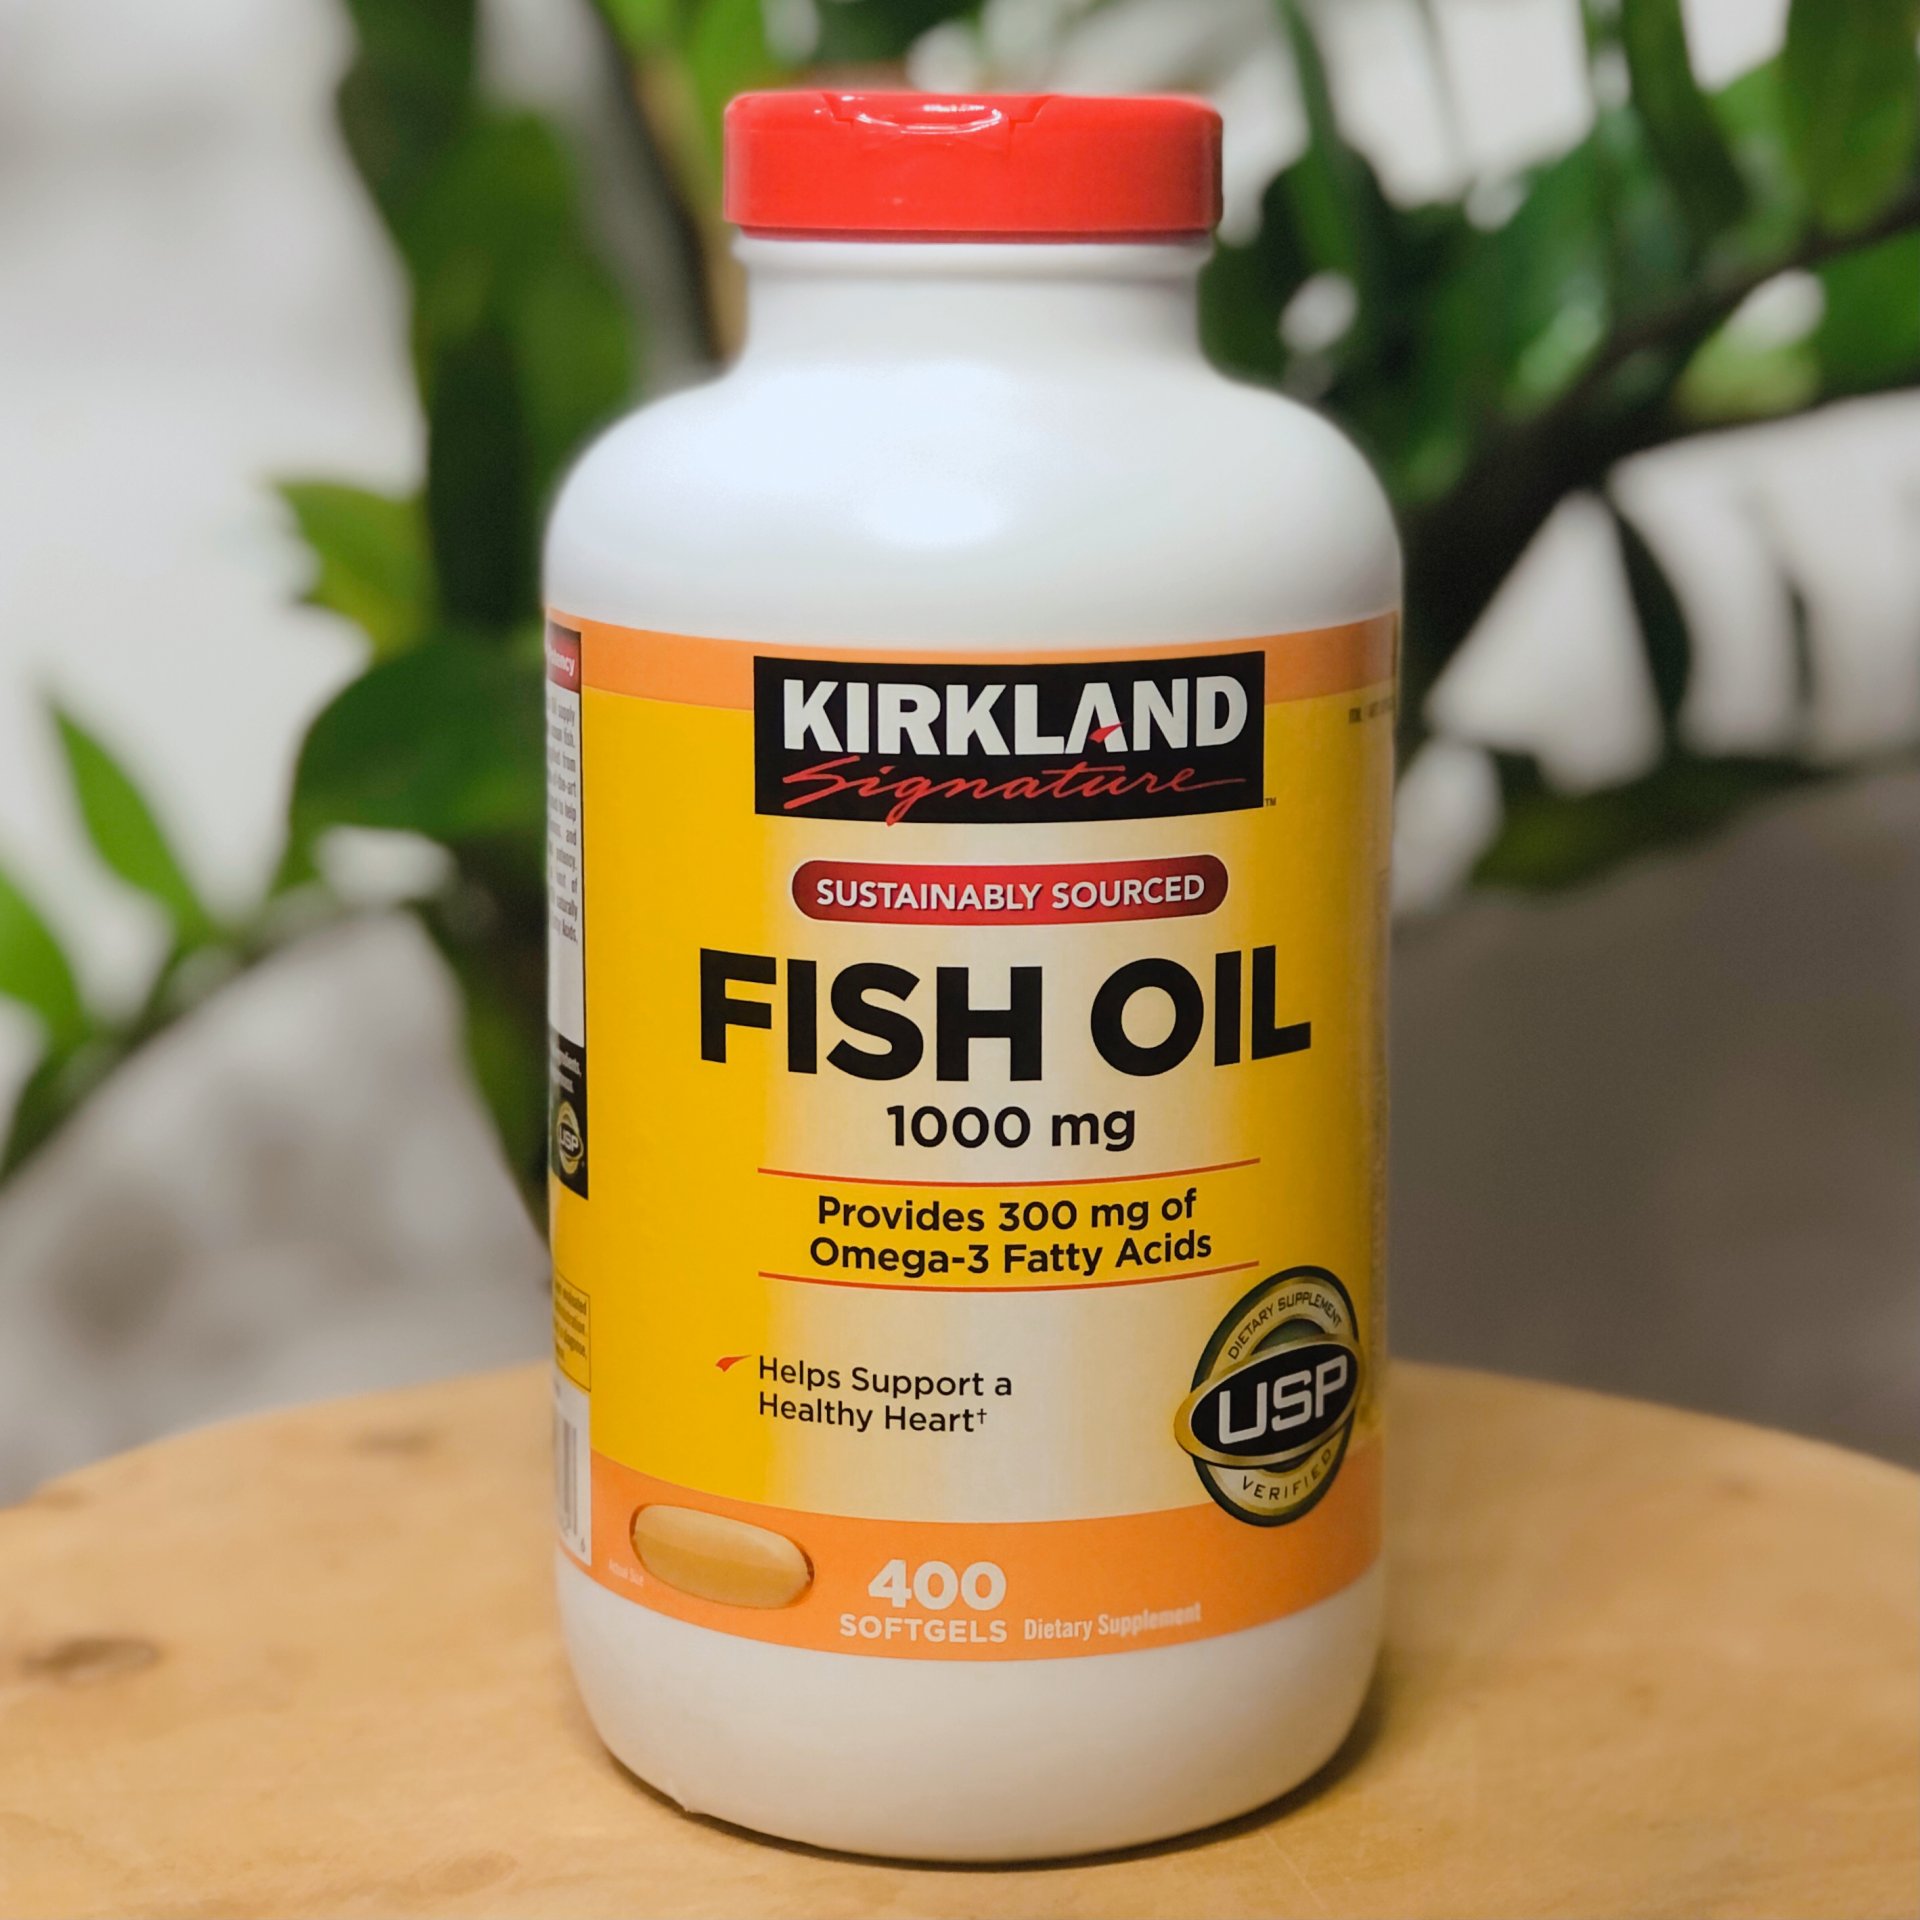 Kirkland Signature Fish Oil 1000mg 400 softgels